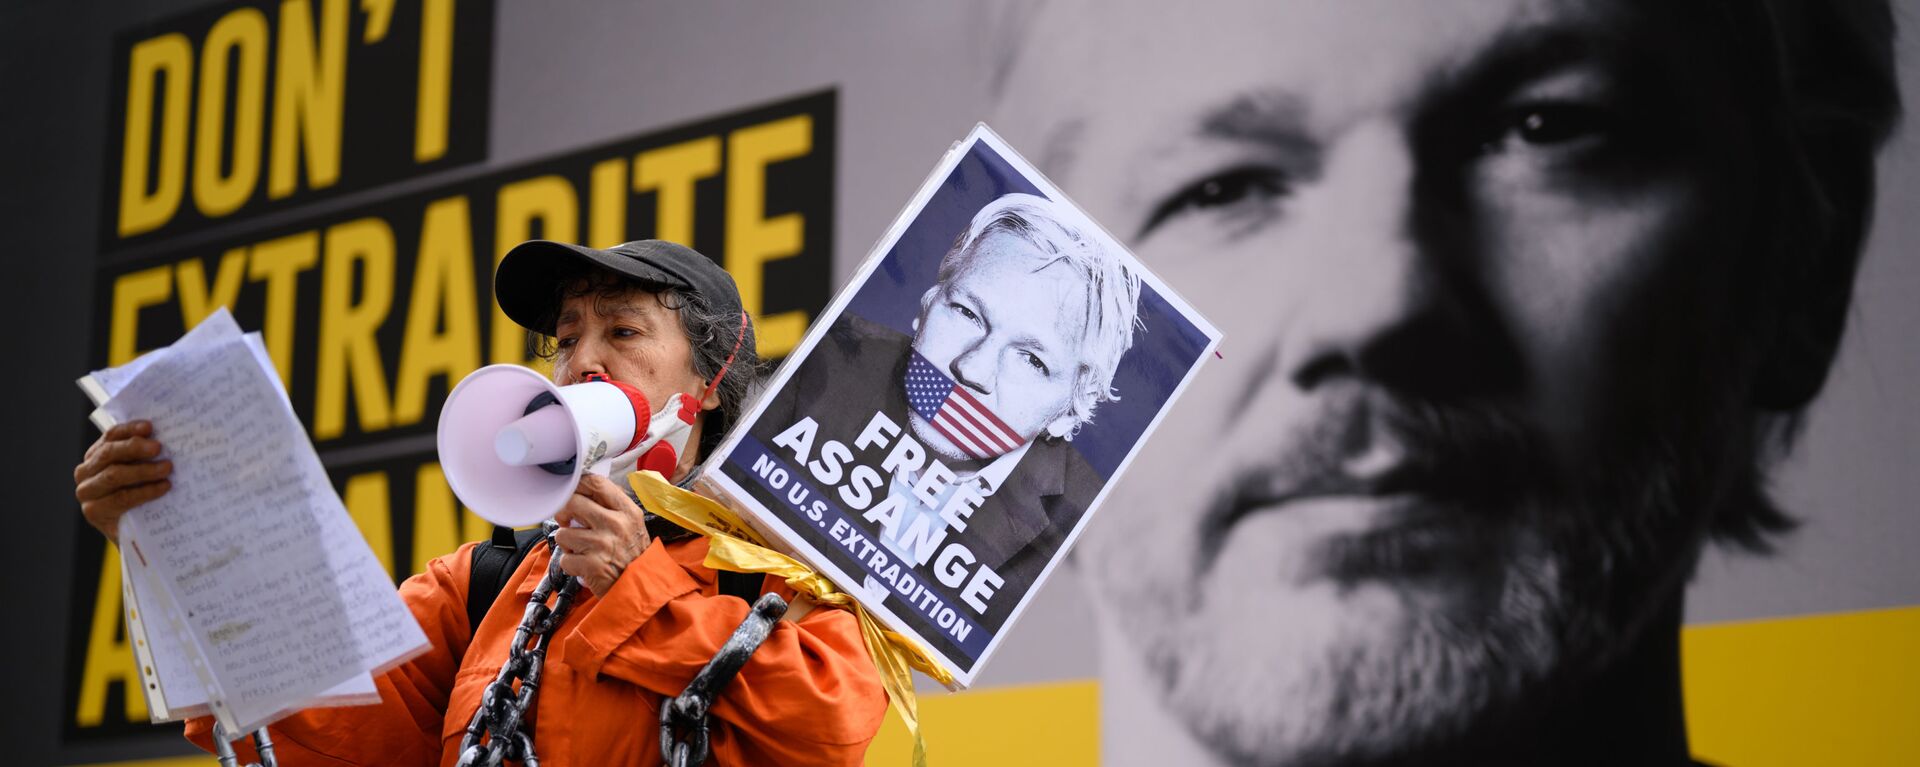 Người ủng hộ Julian Assange trong cuộc biểu tình chống lại việc dẫn độ Julian Assange ở London, Vương quốc Anh - Sputnik Việt Nam, 1920, 13.12.2021